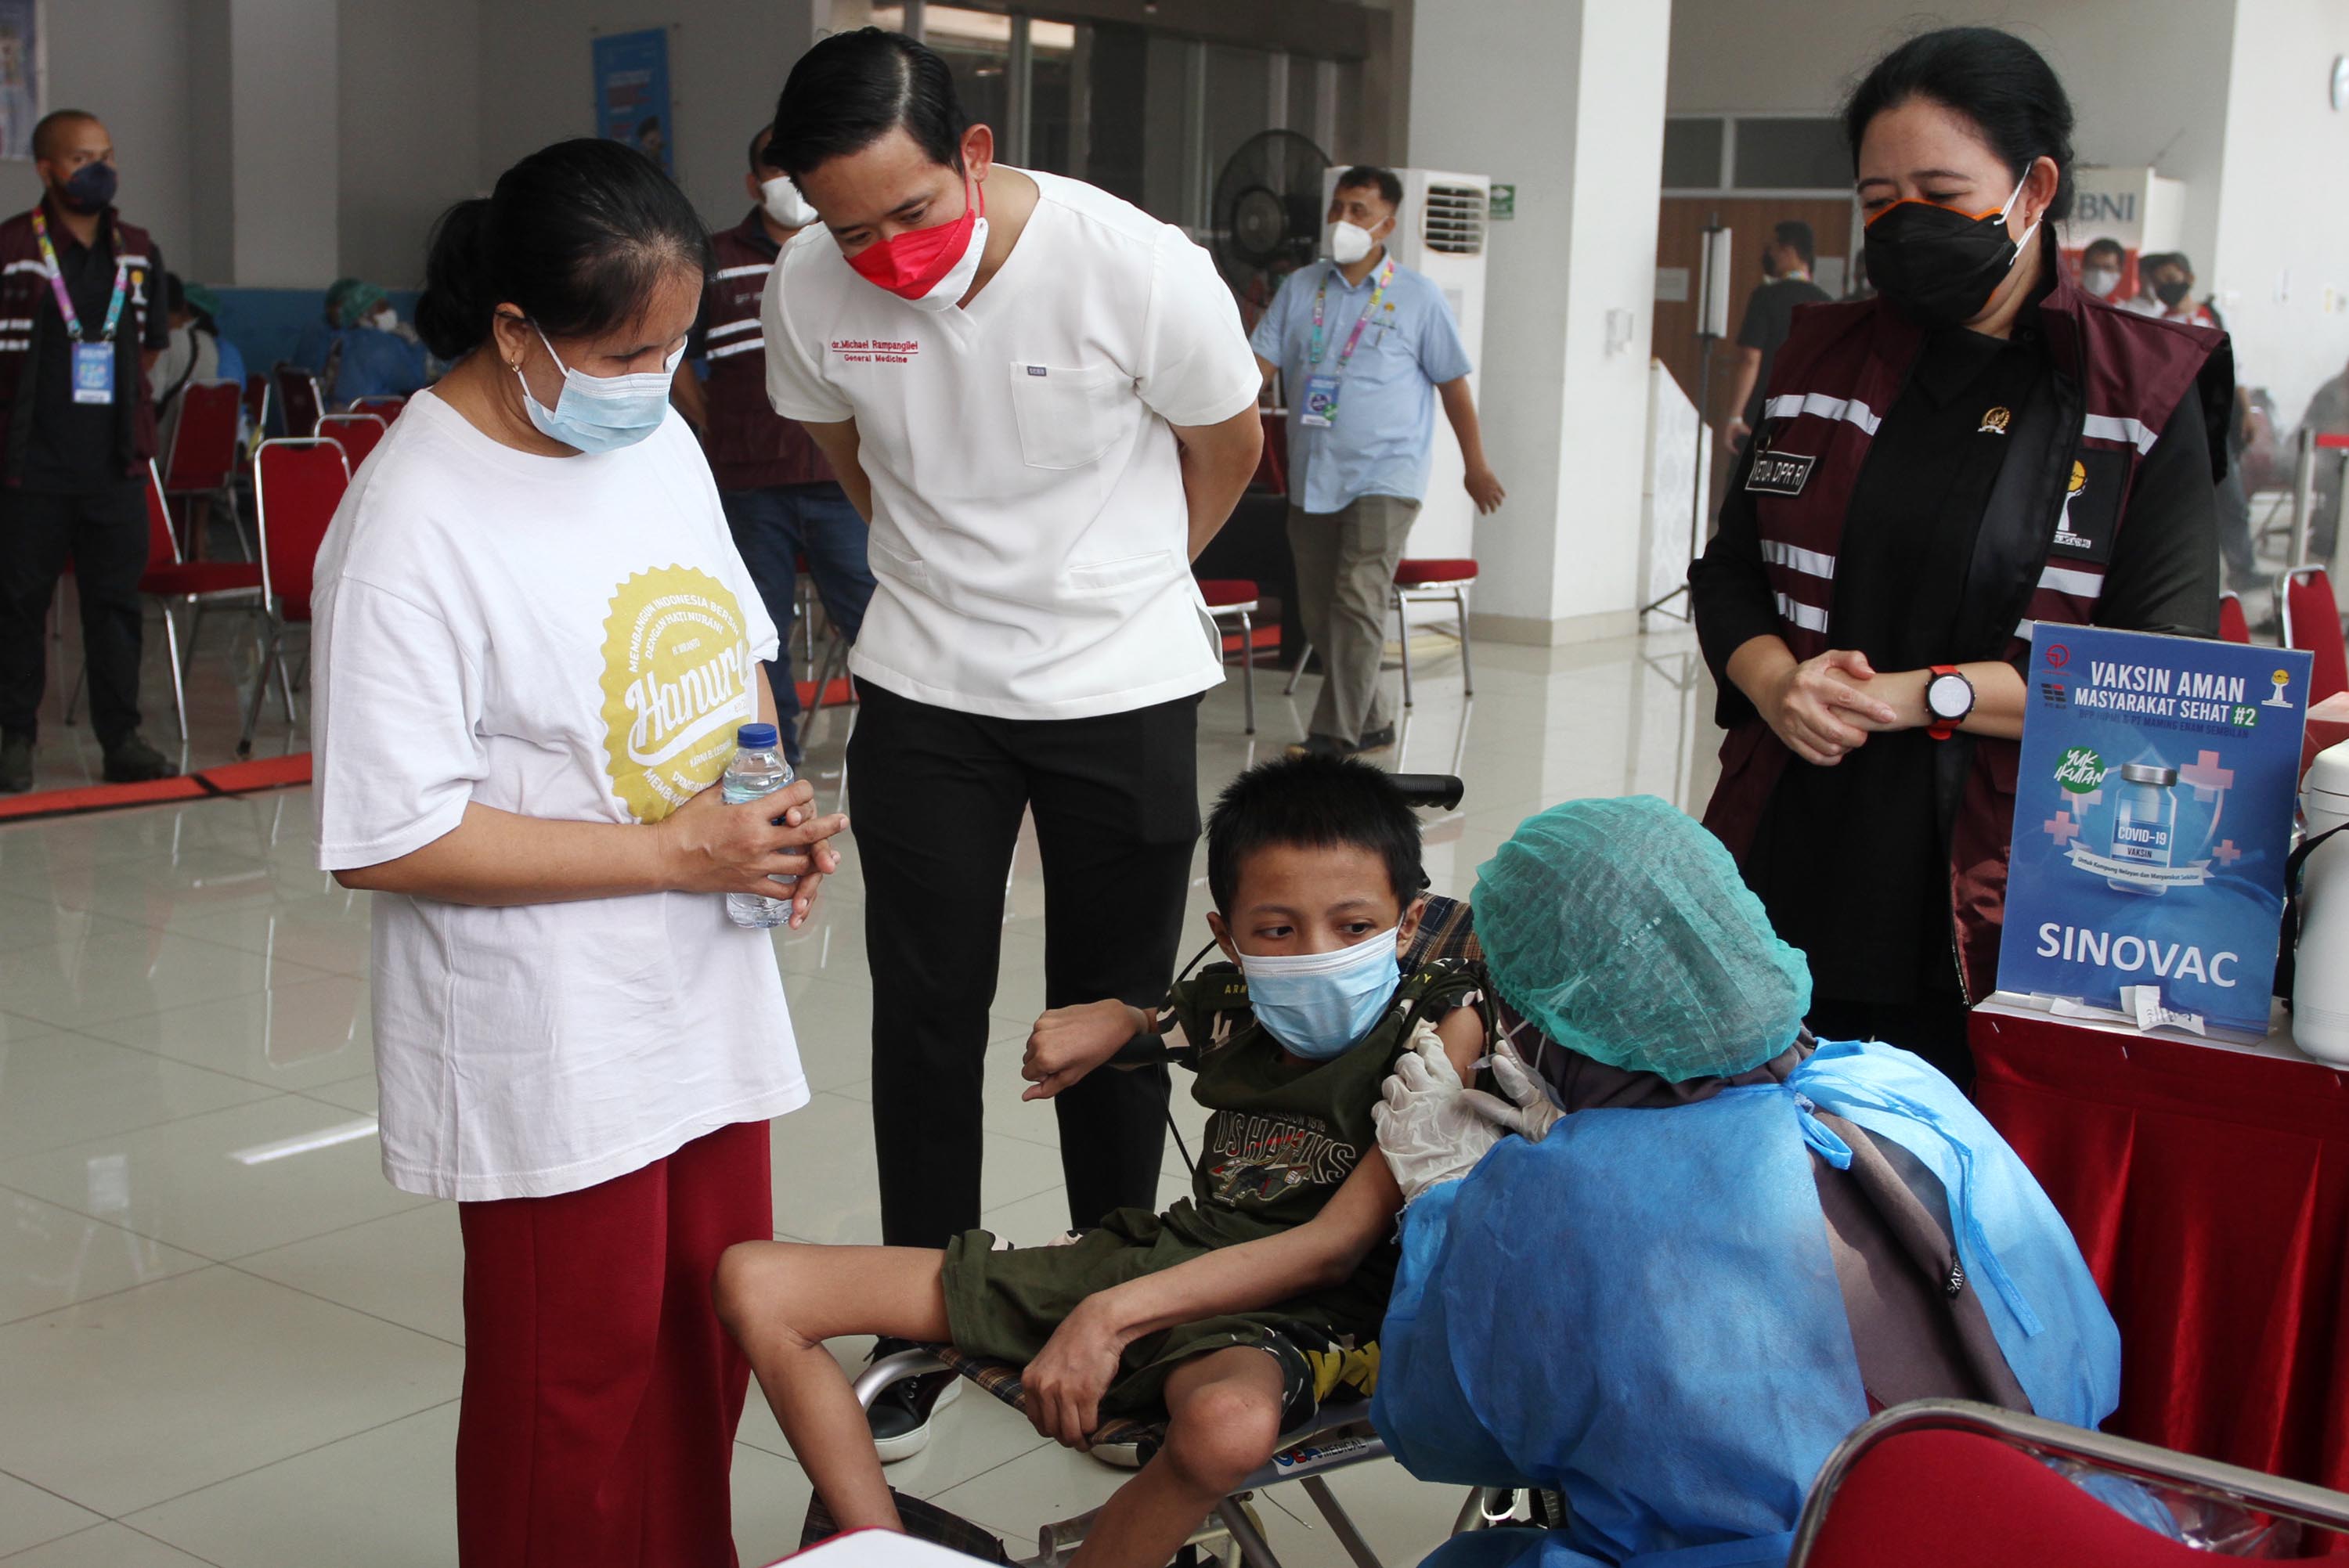 Ketua DPR RI Puan Maharani saat mengunjungi sentra vaksinasi yang digelar HIPMI di Pasar Ikan Modern Muara Baru Jakarta Utara, Kamis 2 September 2021. Foto : Ismail Pohan/TrenAsia